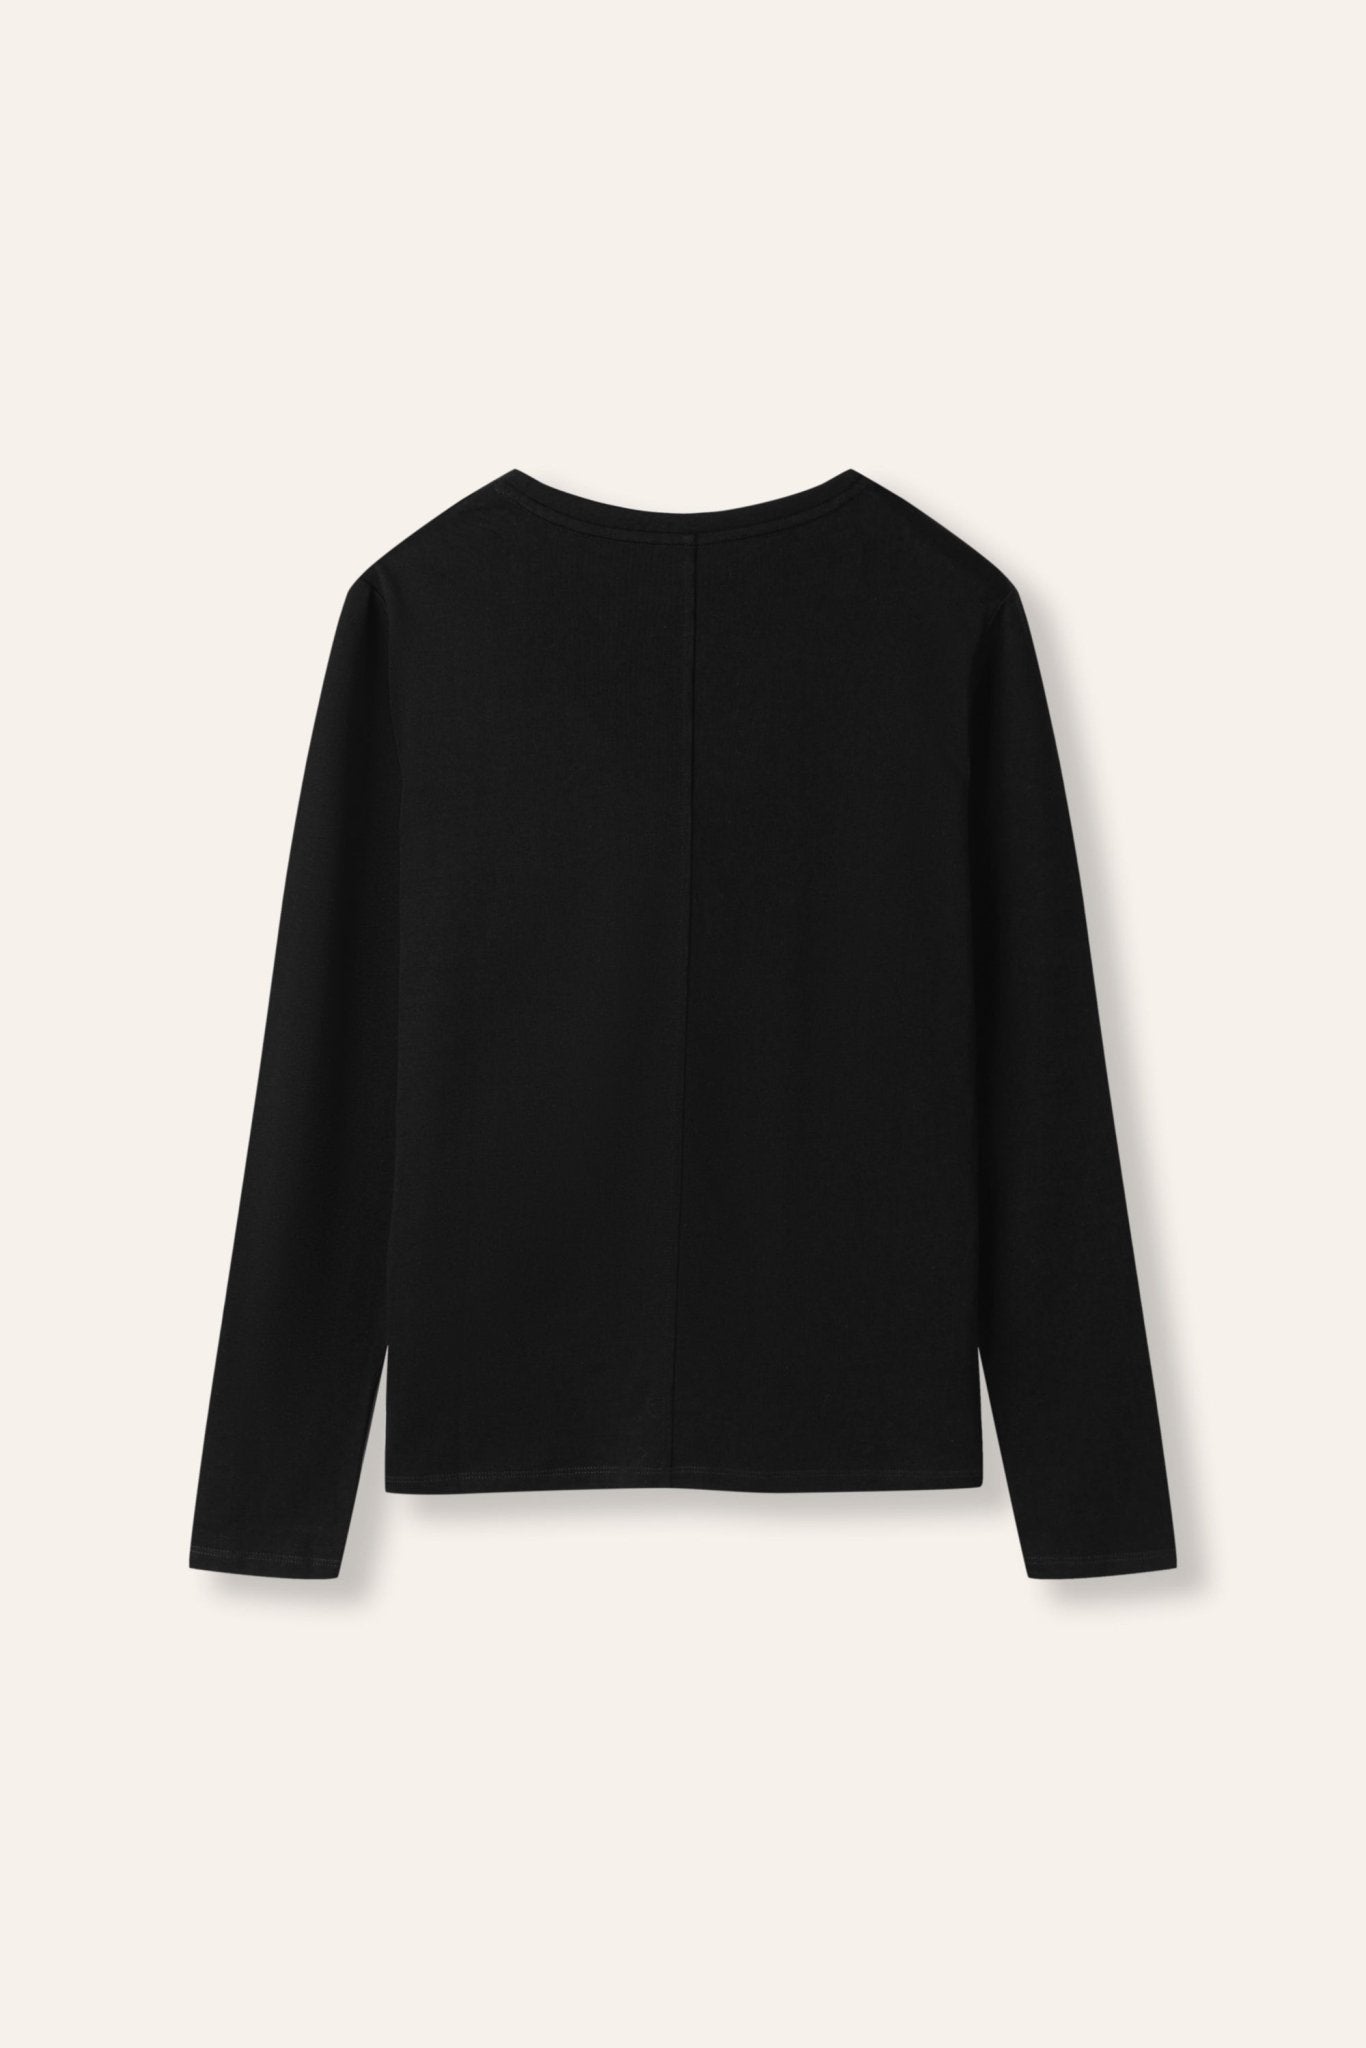 MAN essentials cotton-jersey top (Black) - STELLAM